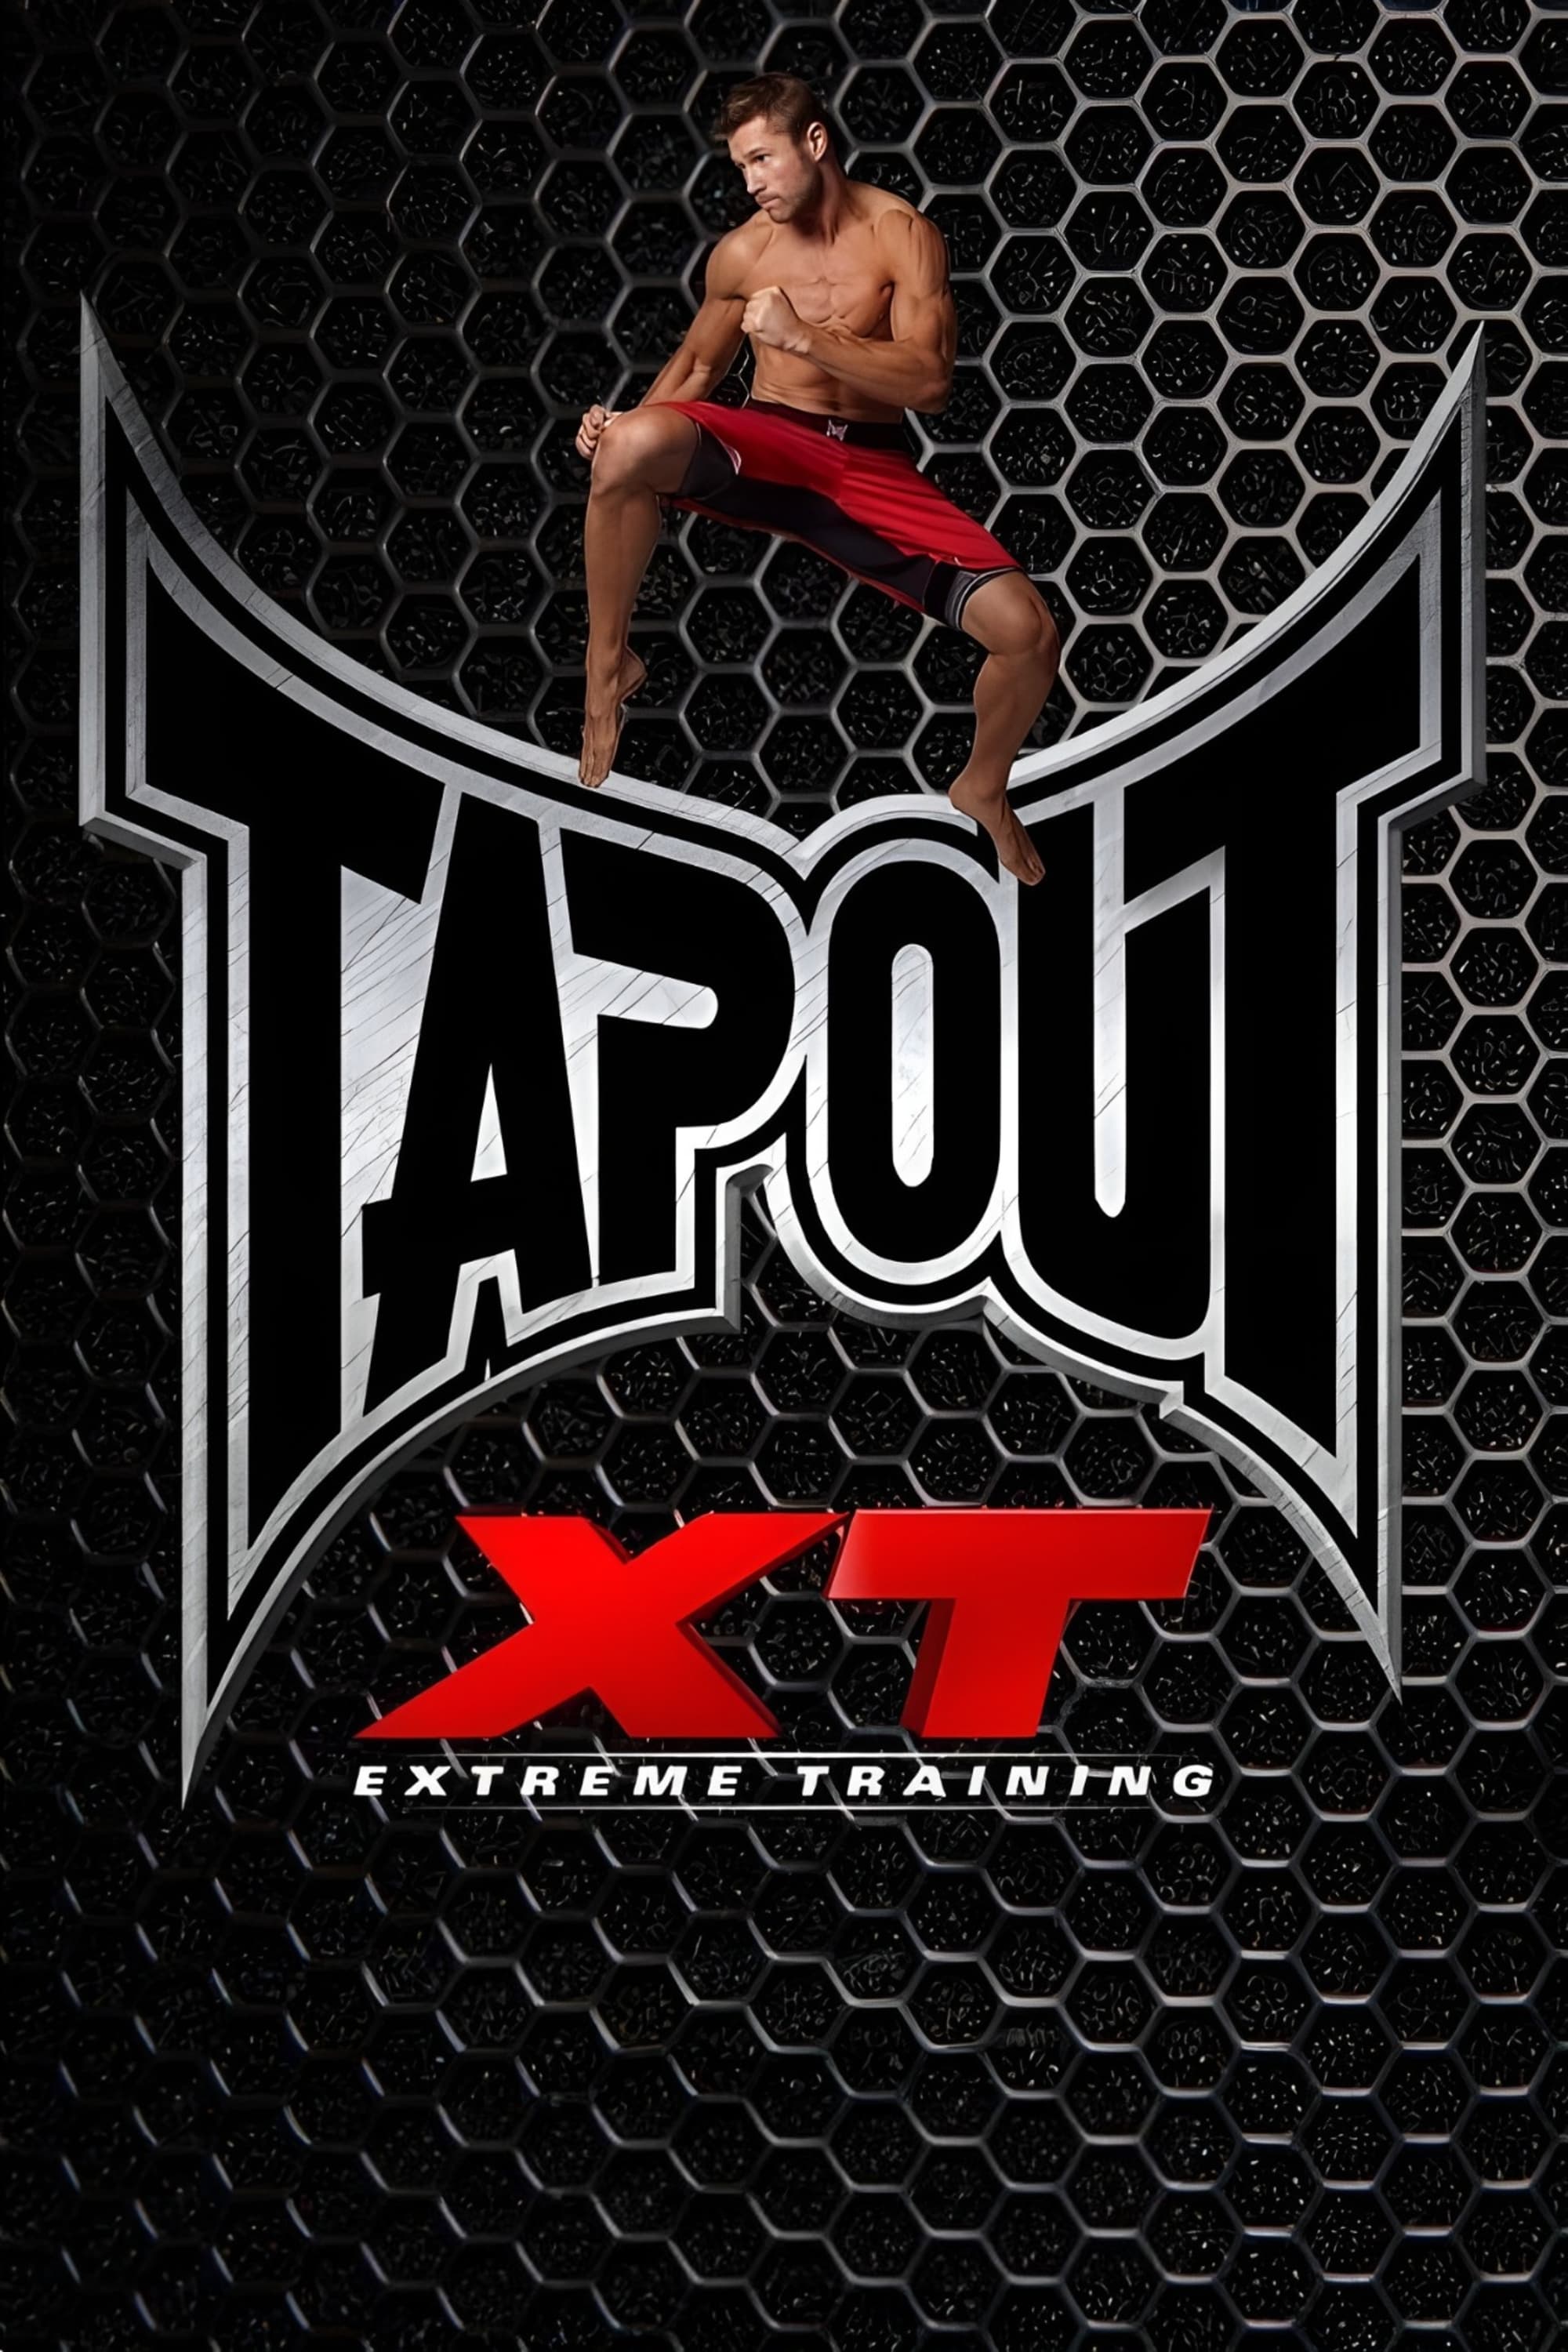 Tapout XT - Cross Core Combat